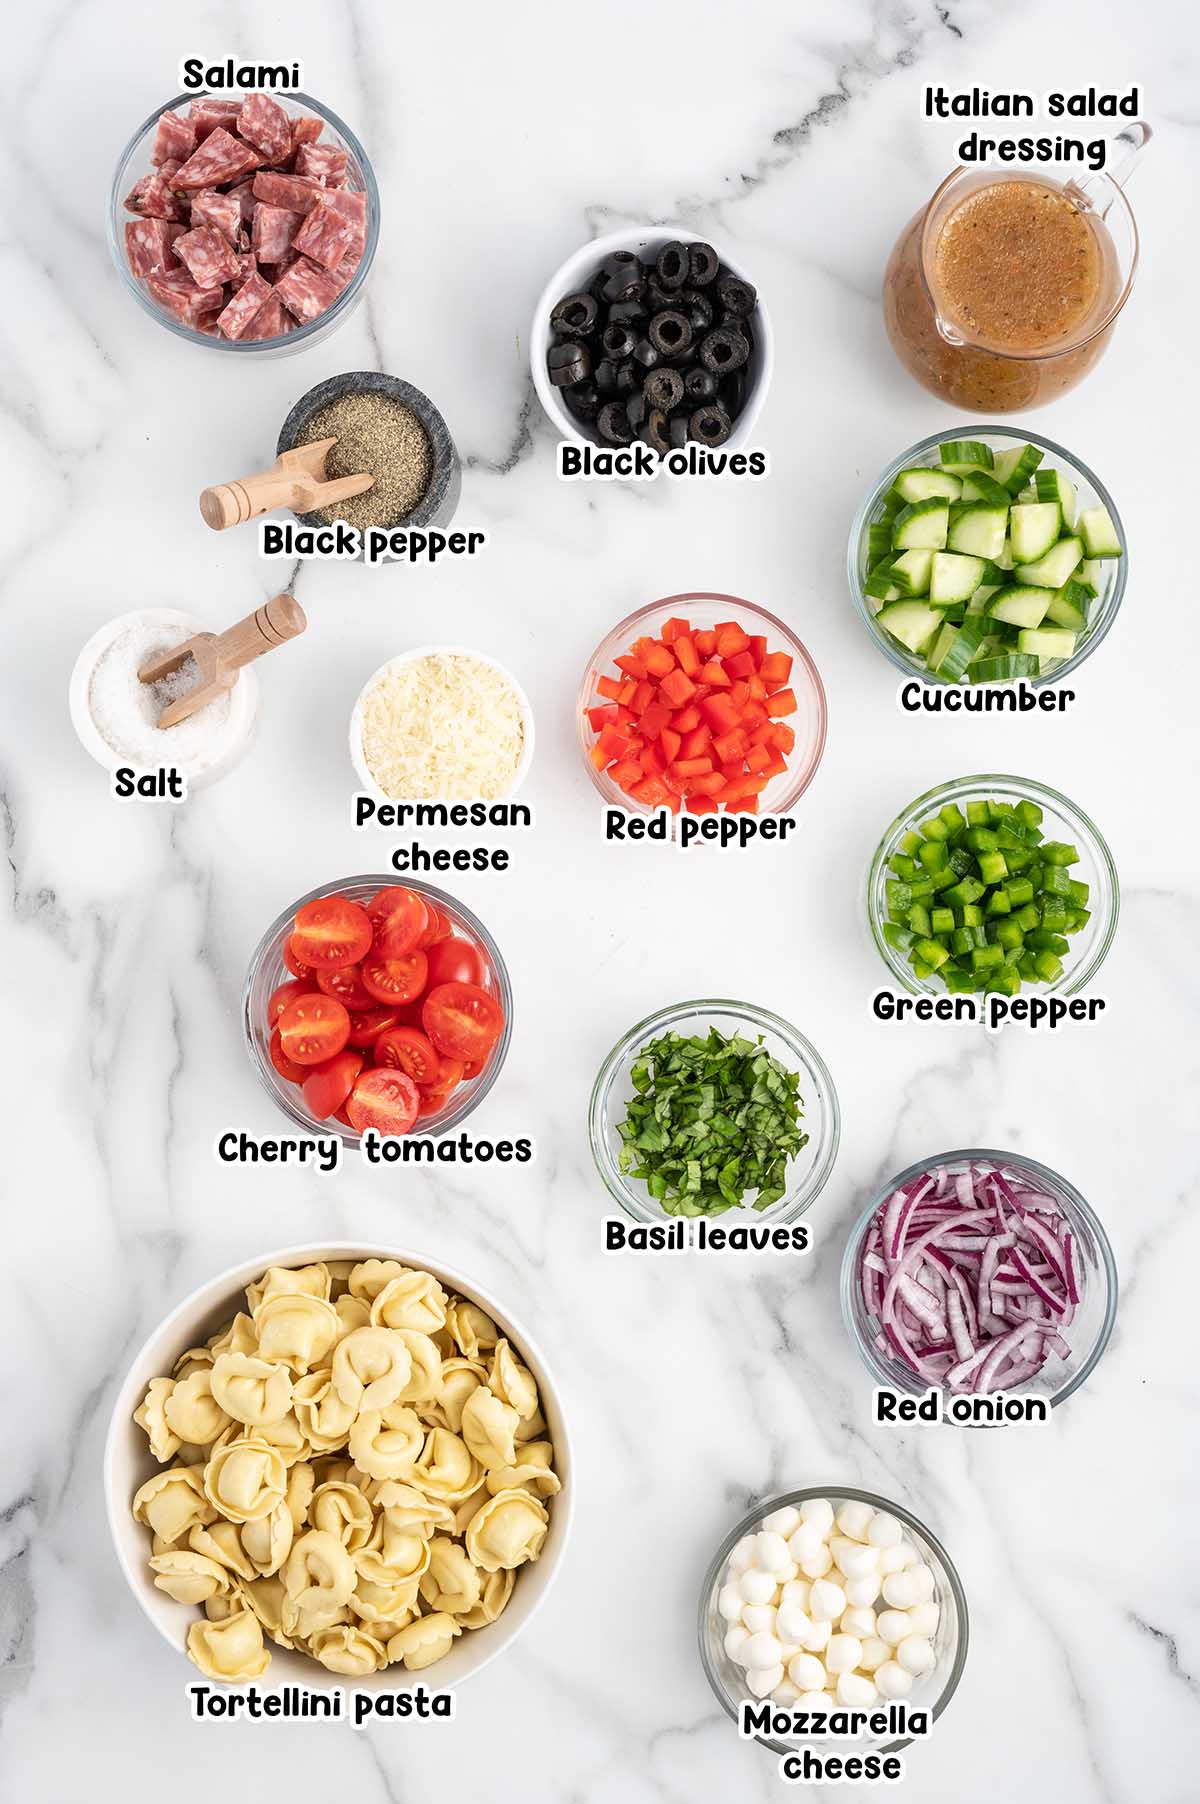 Tortellini Pasta Salad ingredients.